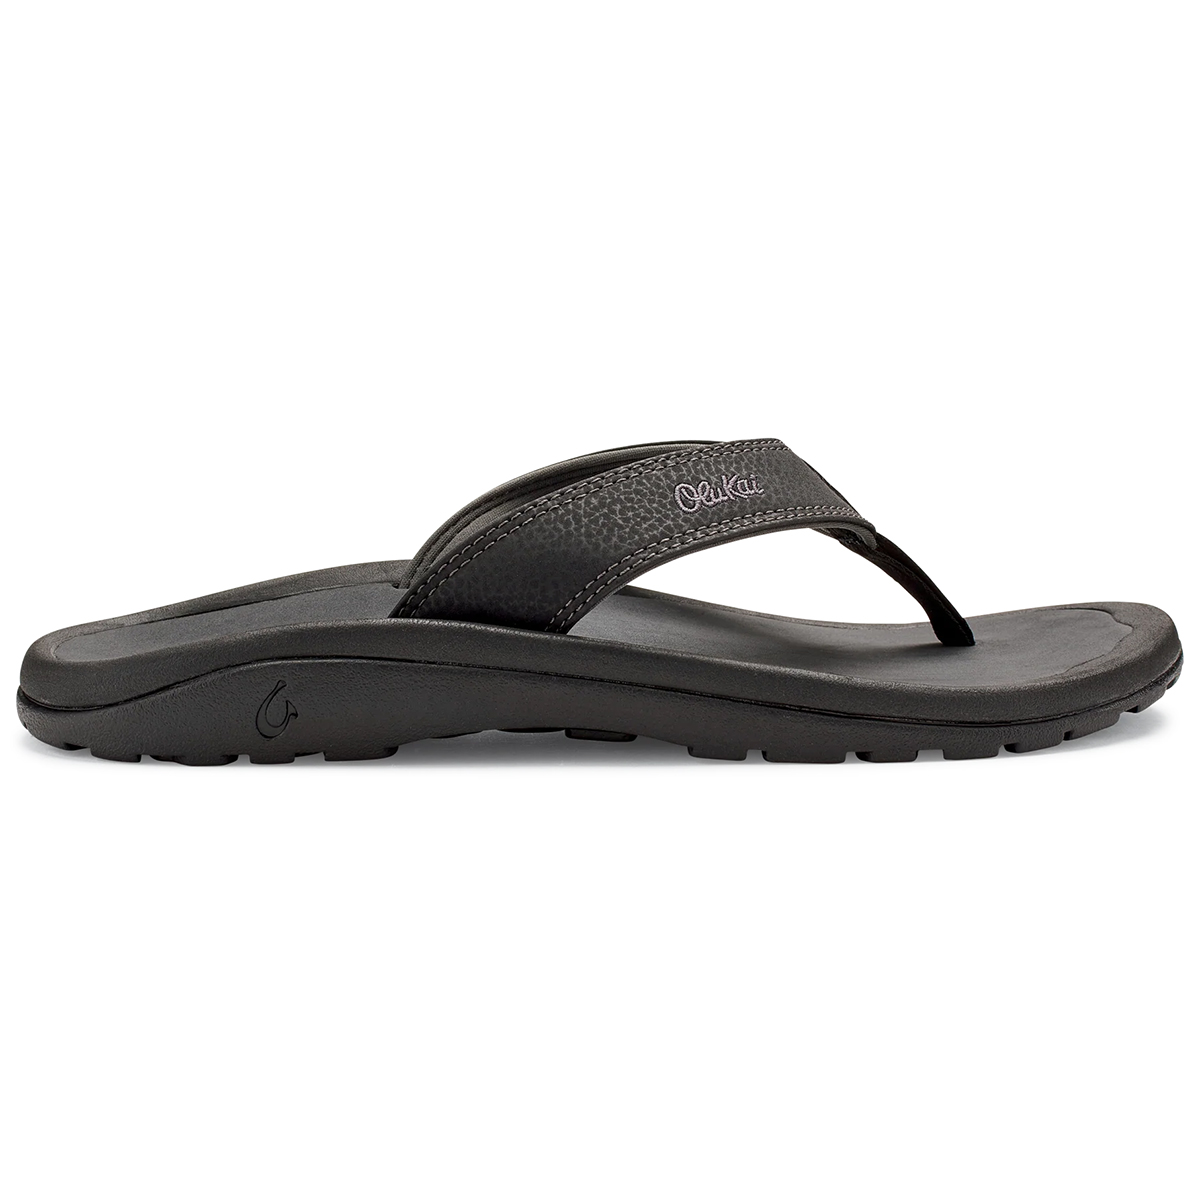 Olukai Men's 'Ohana Beach Sandals - Size 12